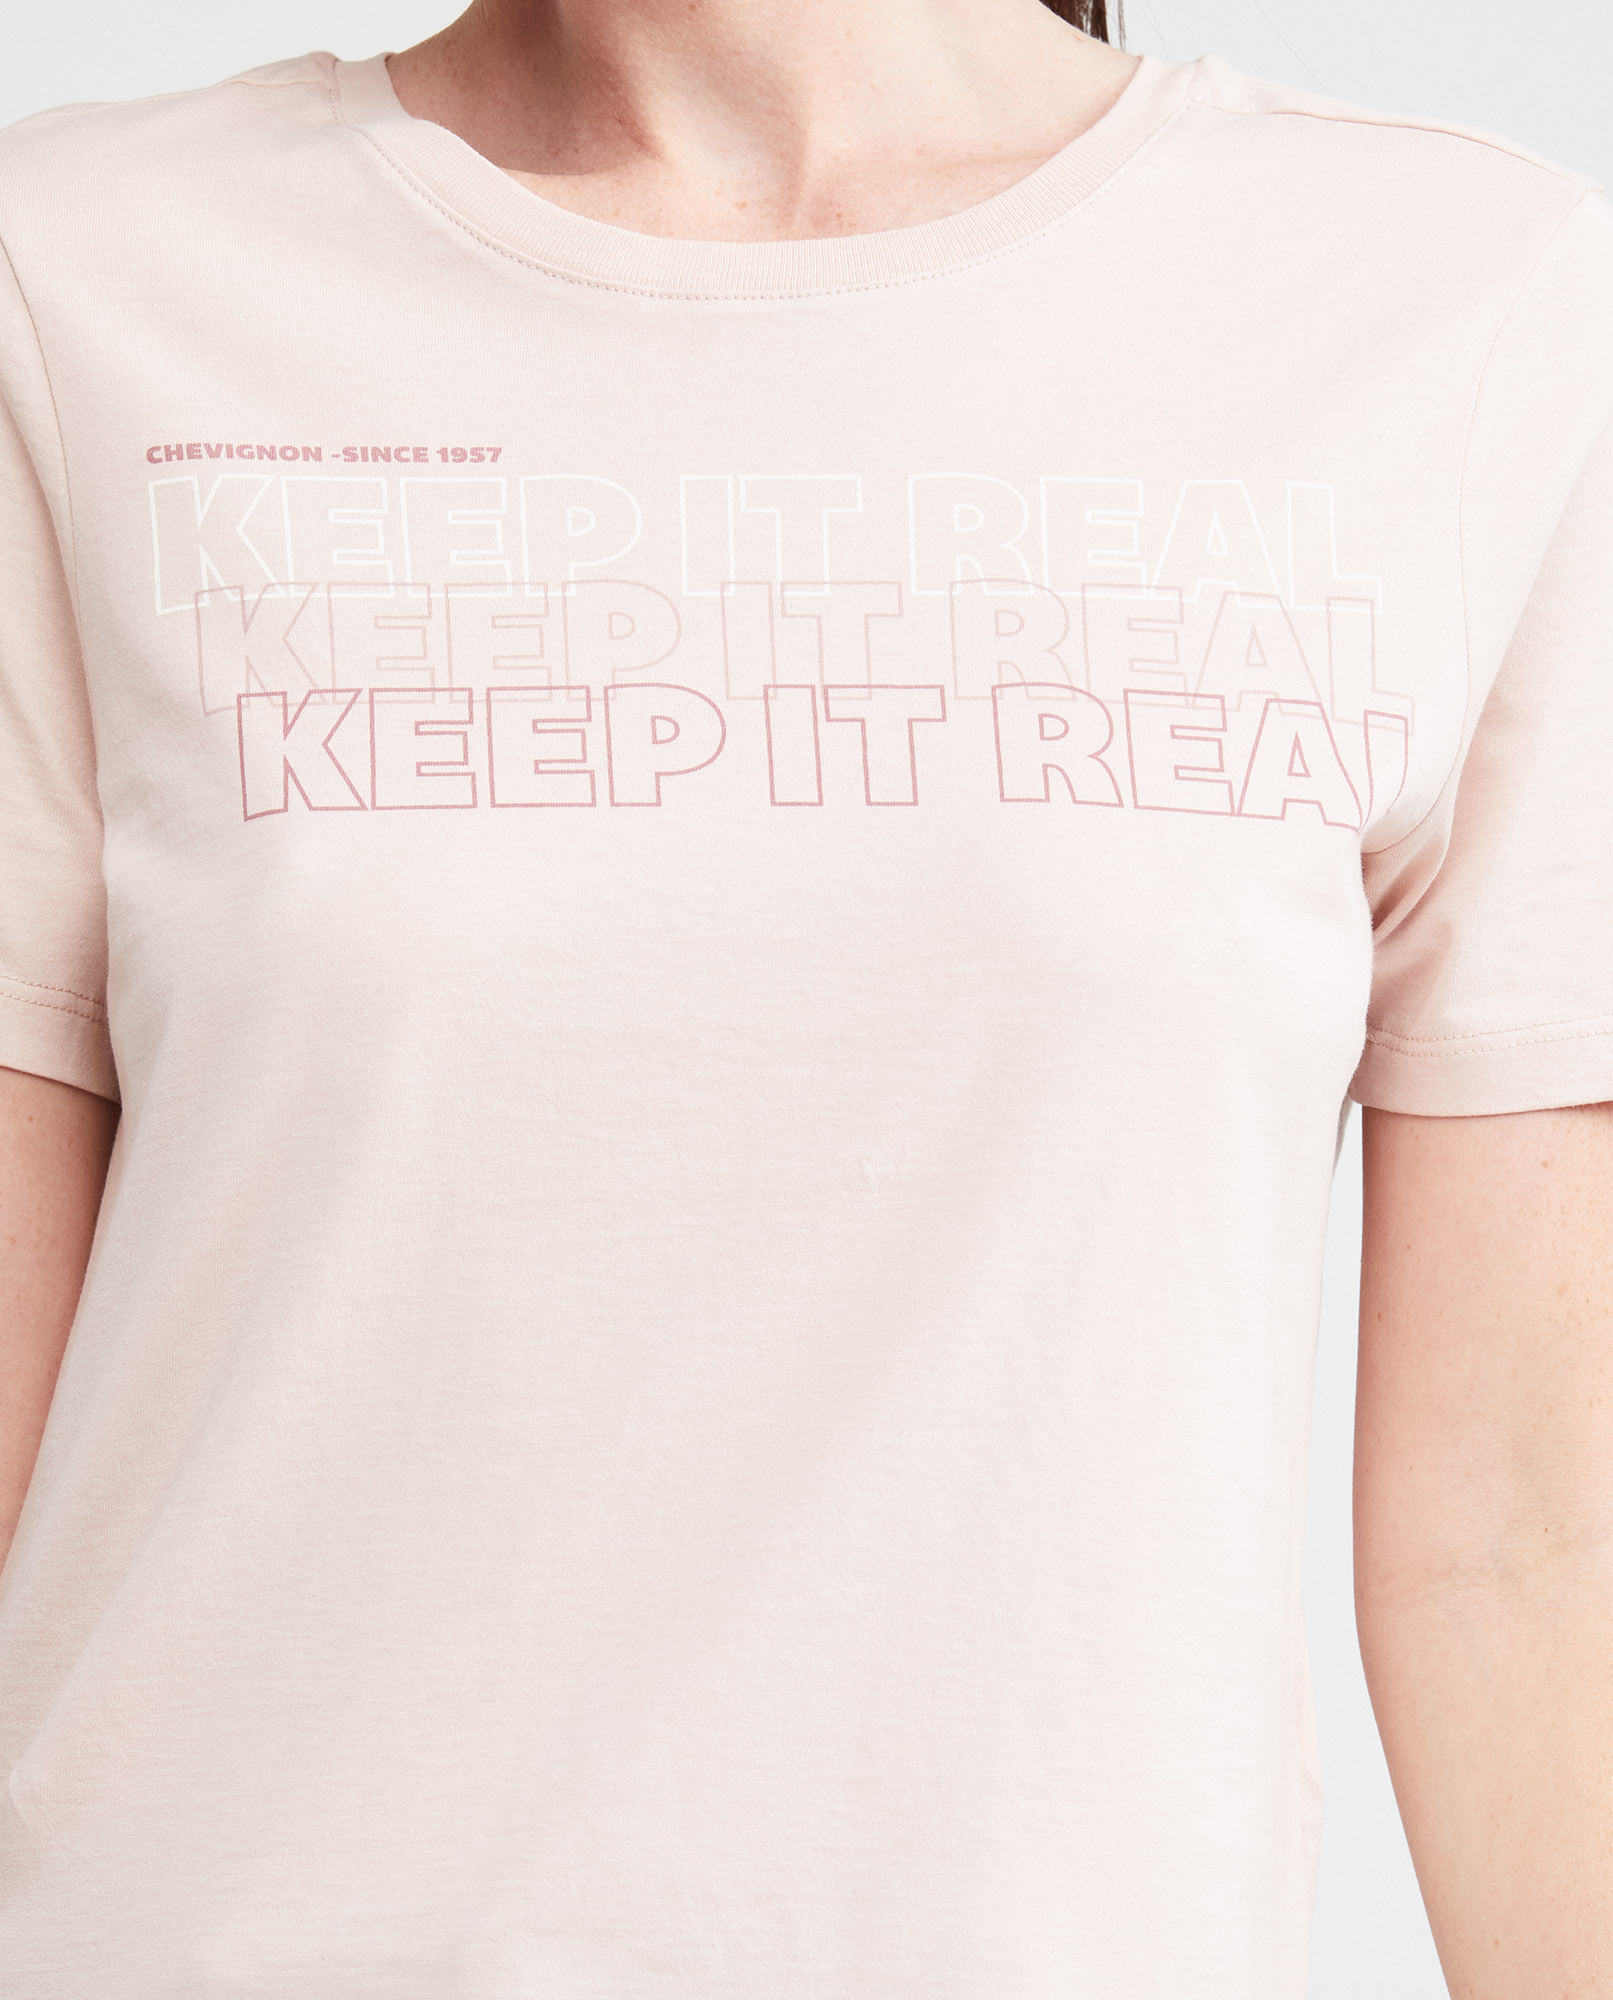 Camiseta básica con cuello redondo de Mujer TEX